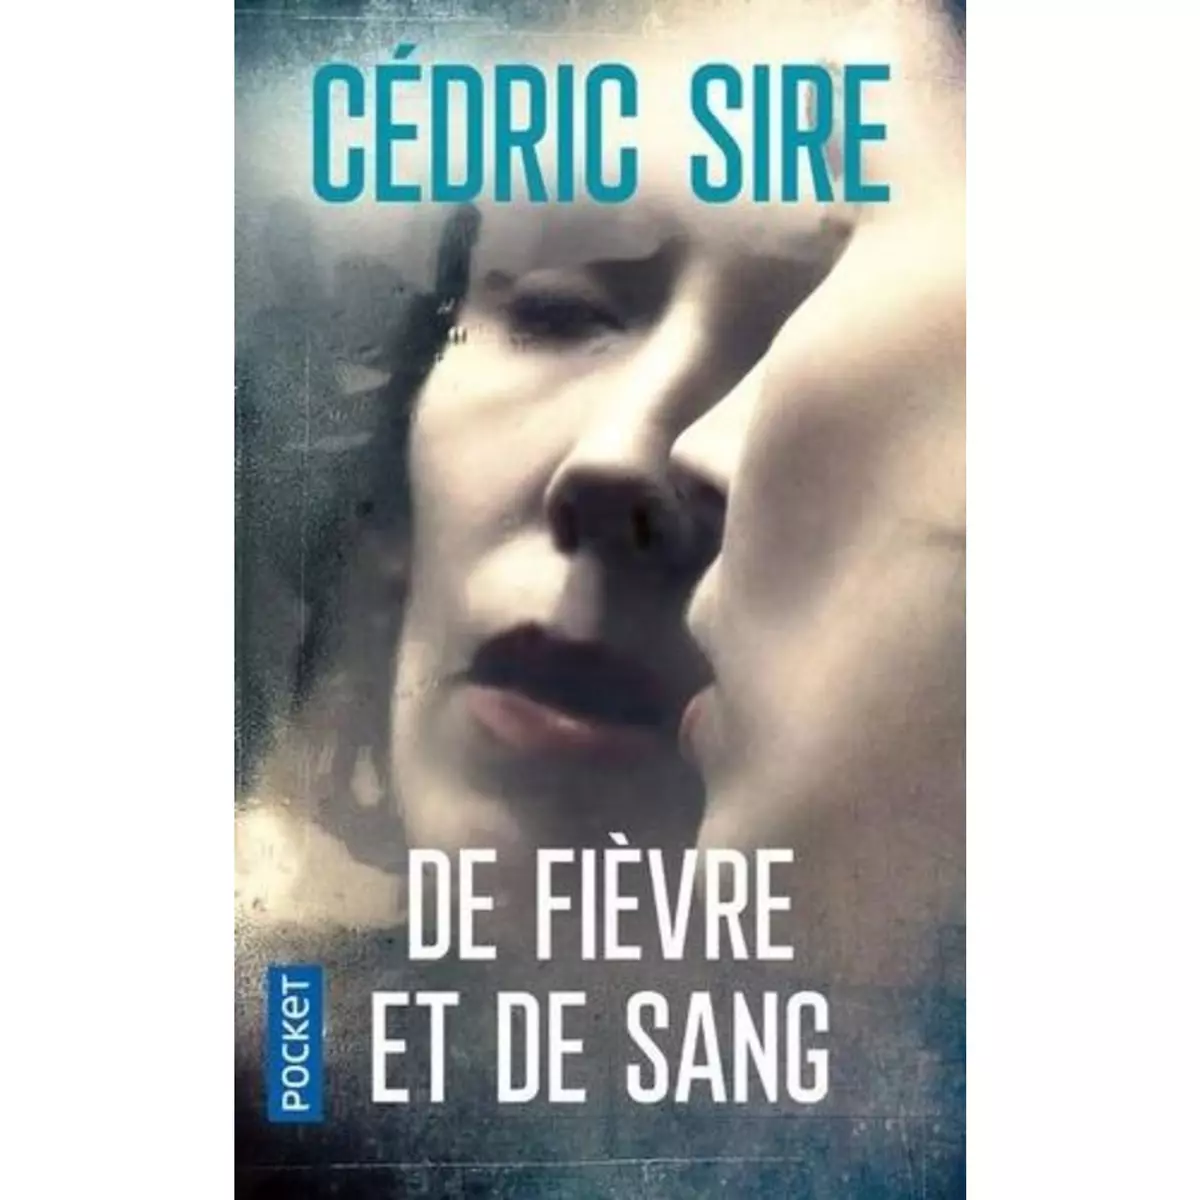  DE FIEVRE ET DE SANG, Sire Cédric